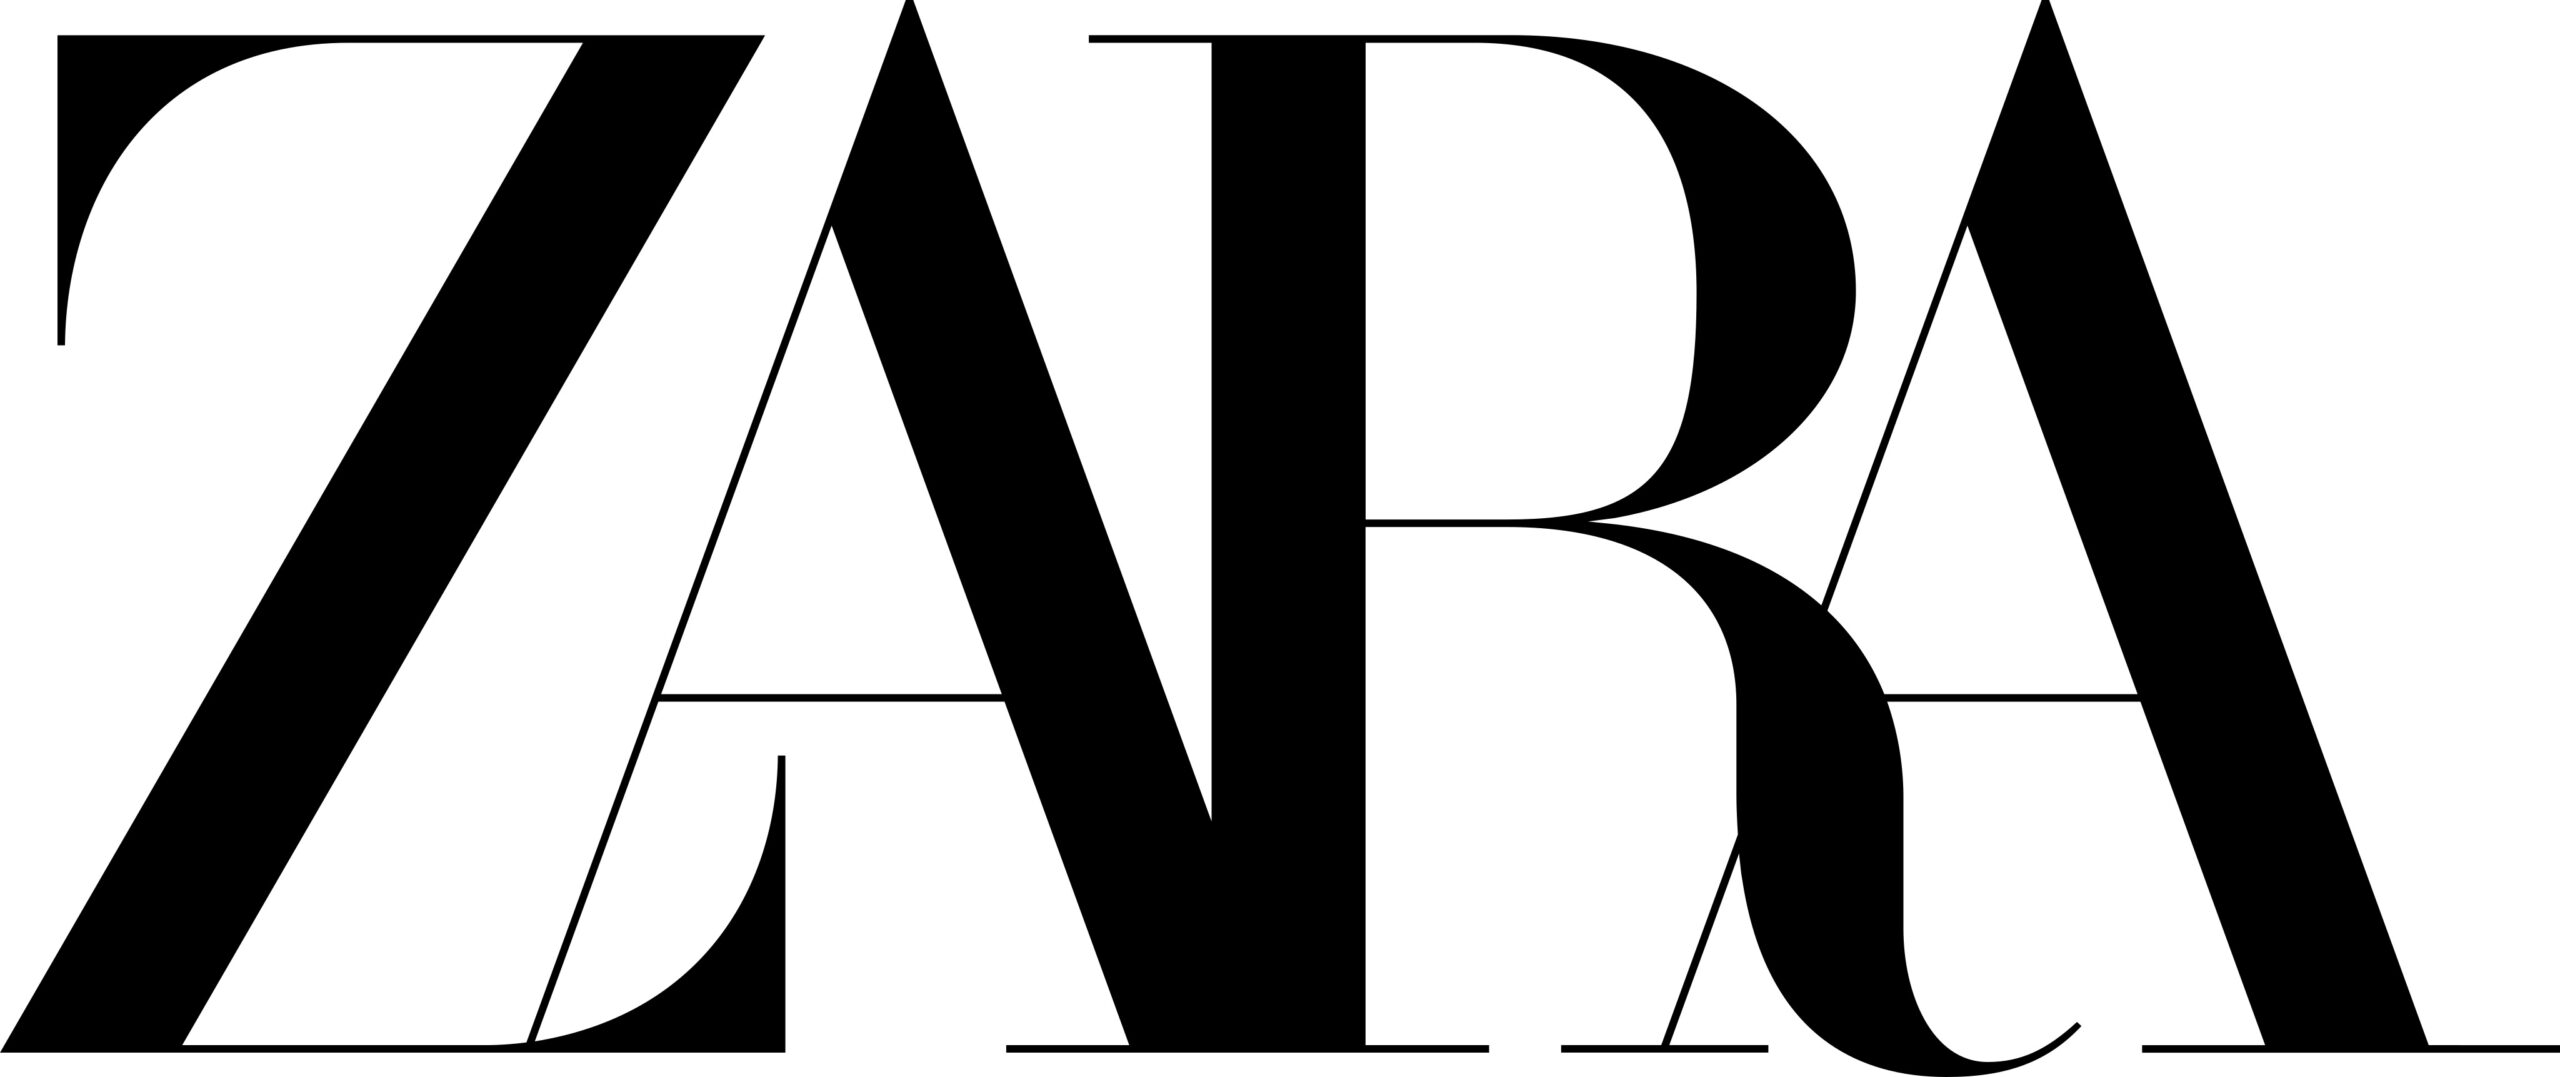 Đôi nét về thương hiệu nước hoa Zara